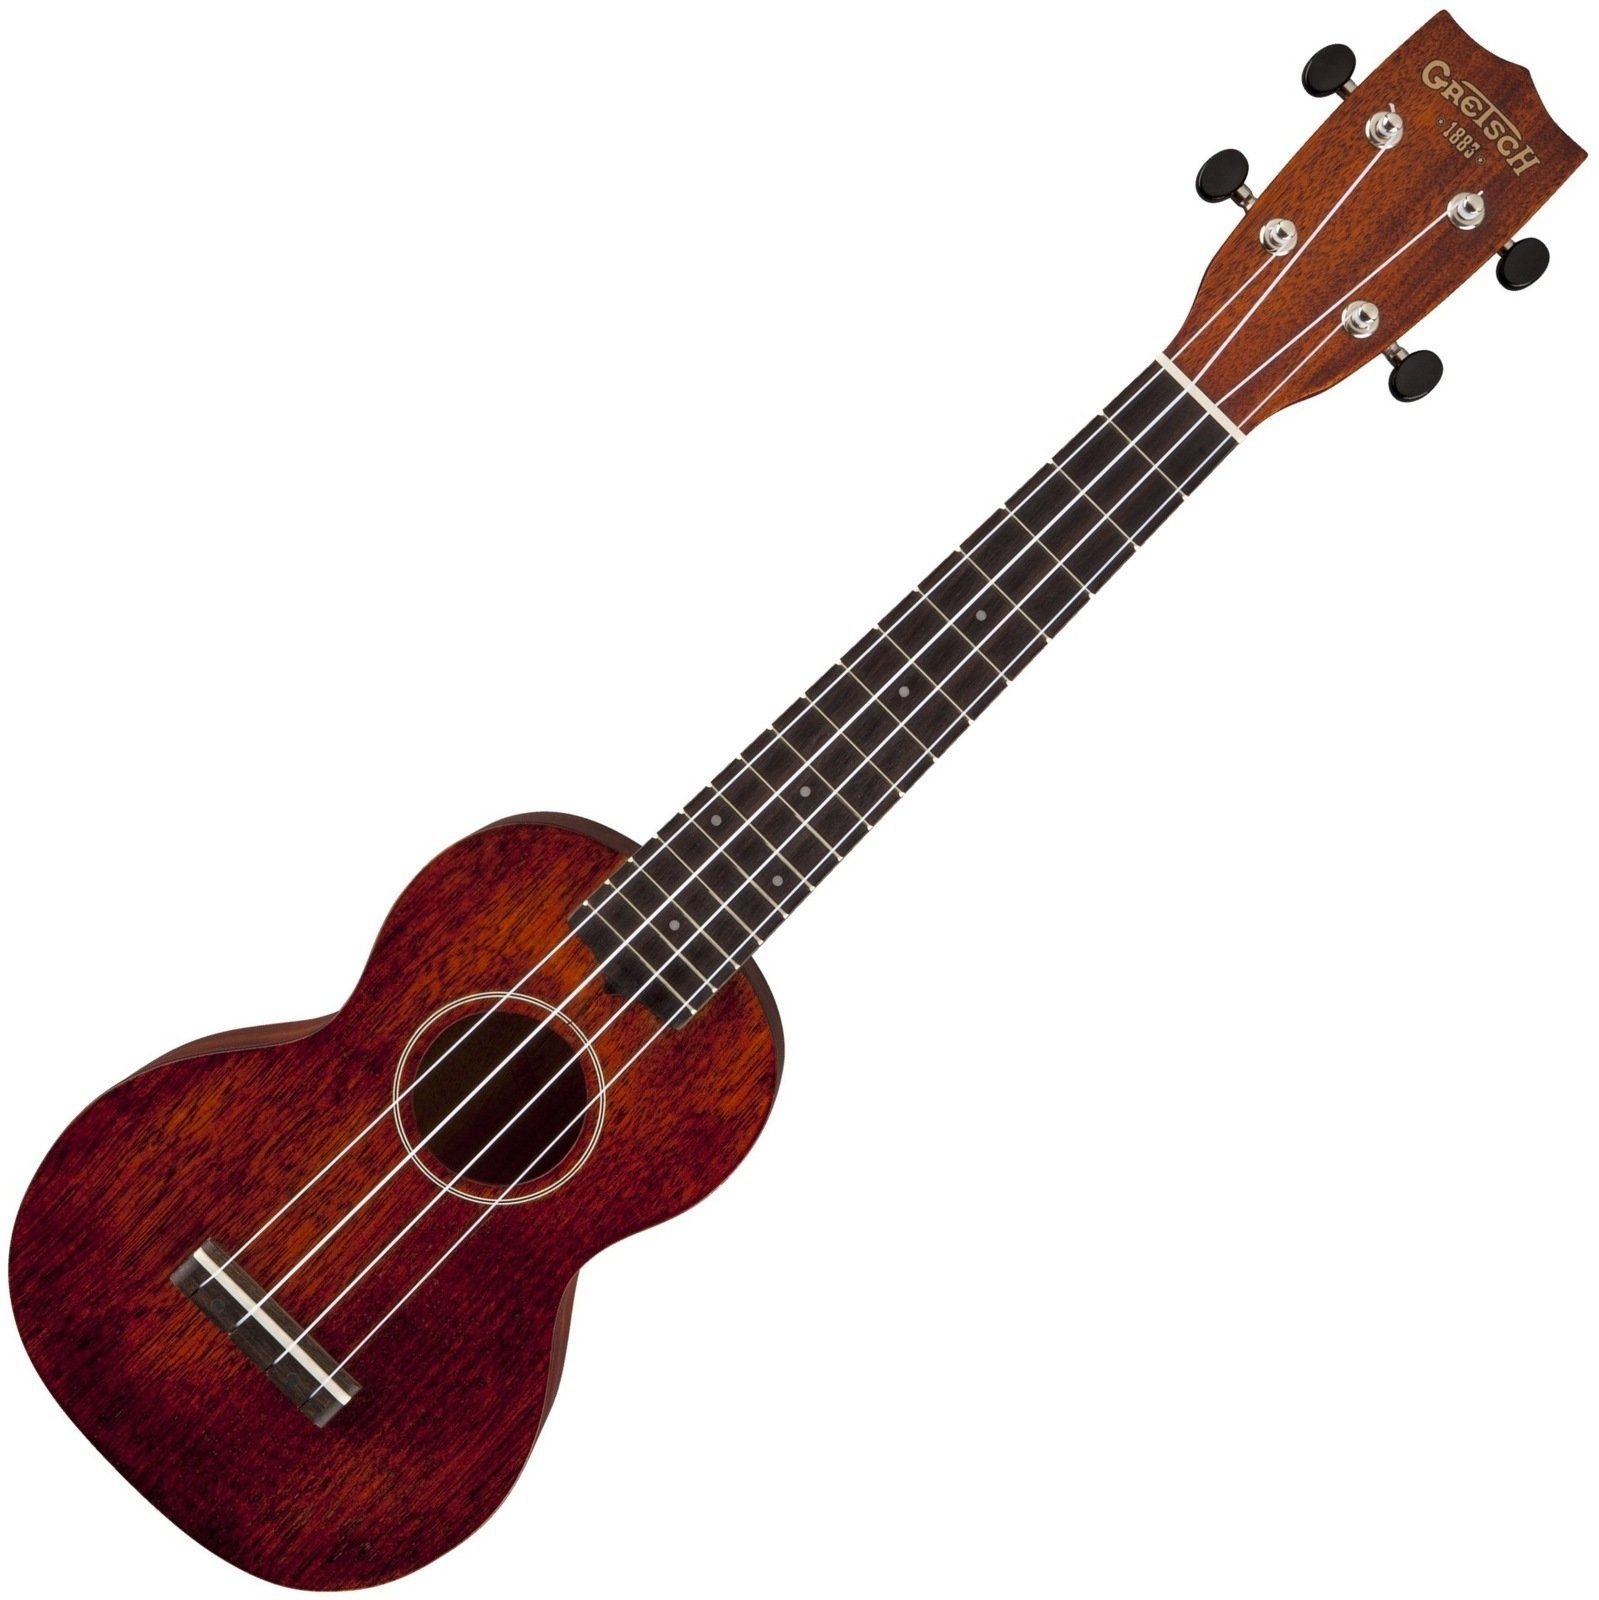 Szoprán ukulele Gretsch G9100-L Soprano Long-Neck Ukulele with Gig Bag